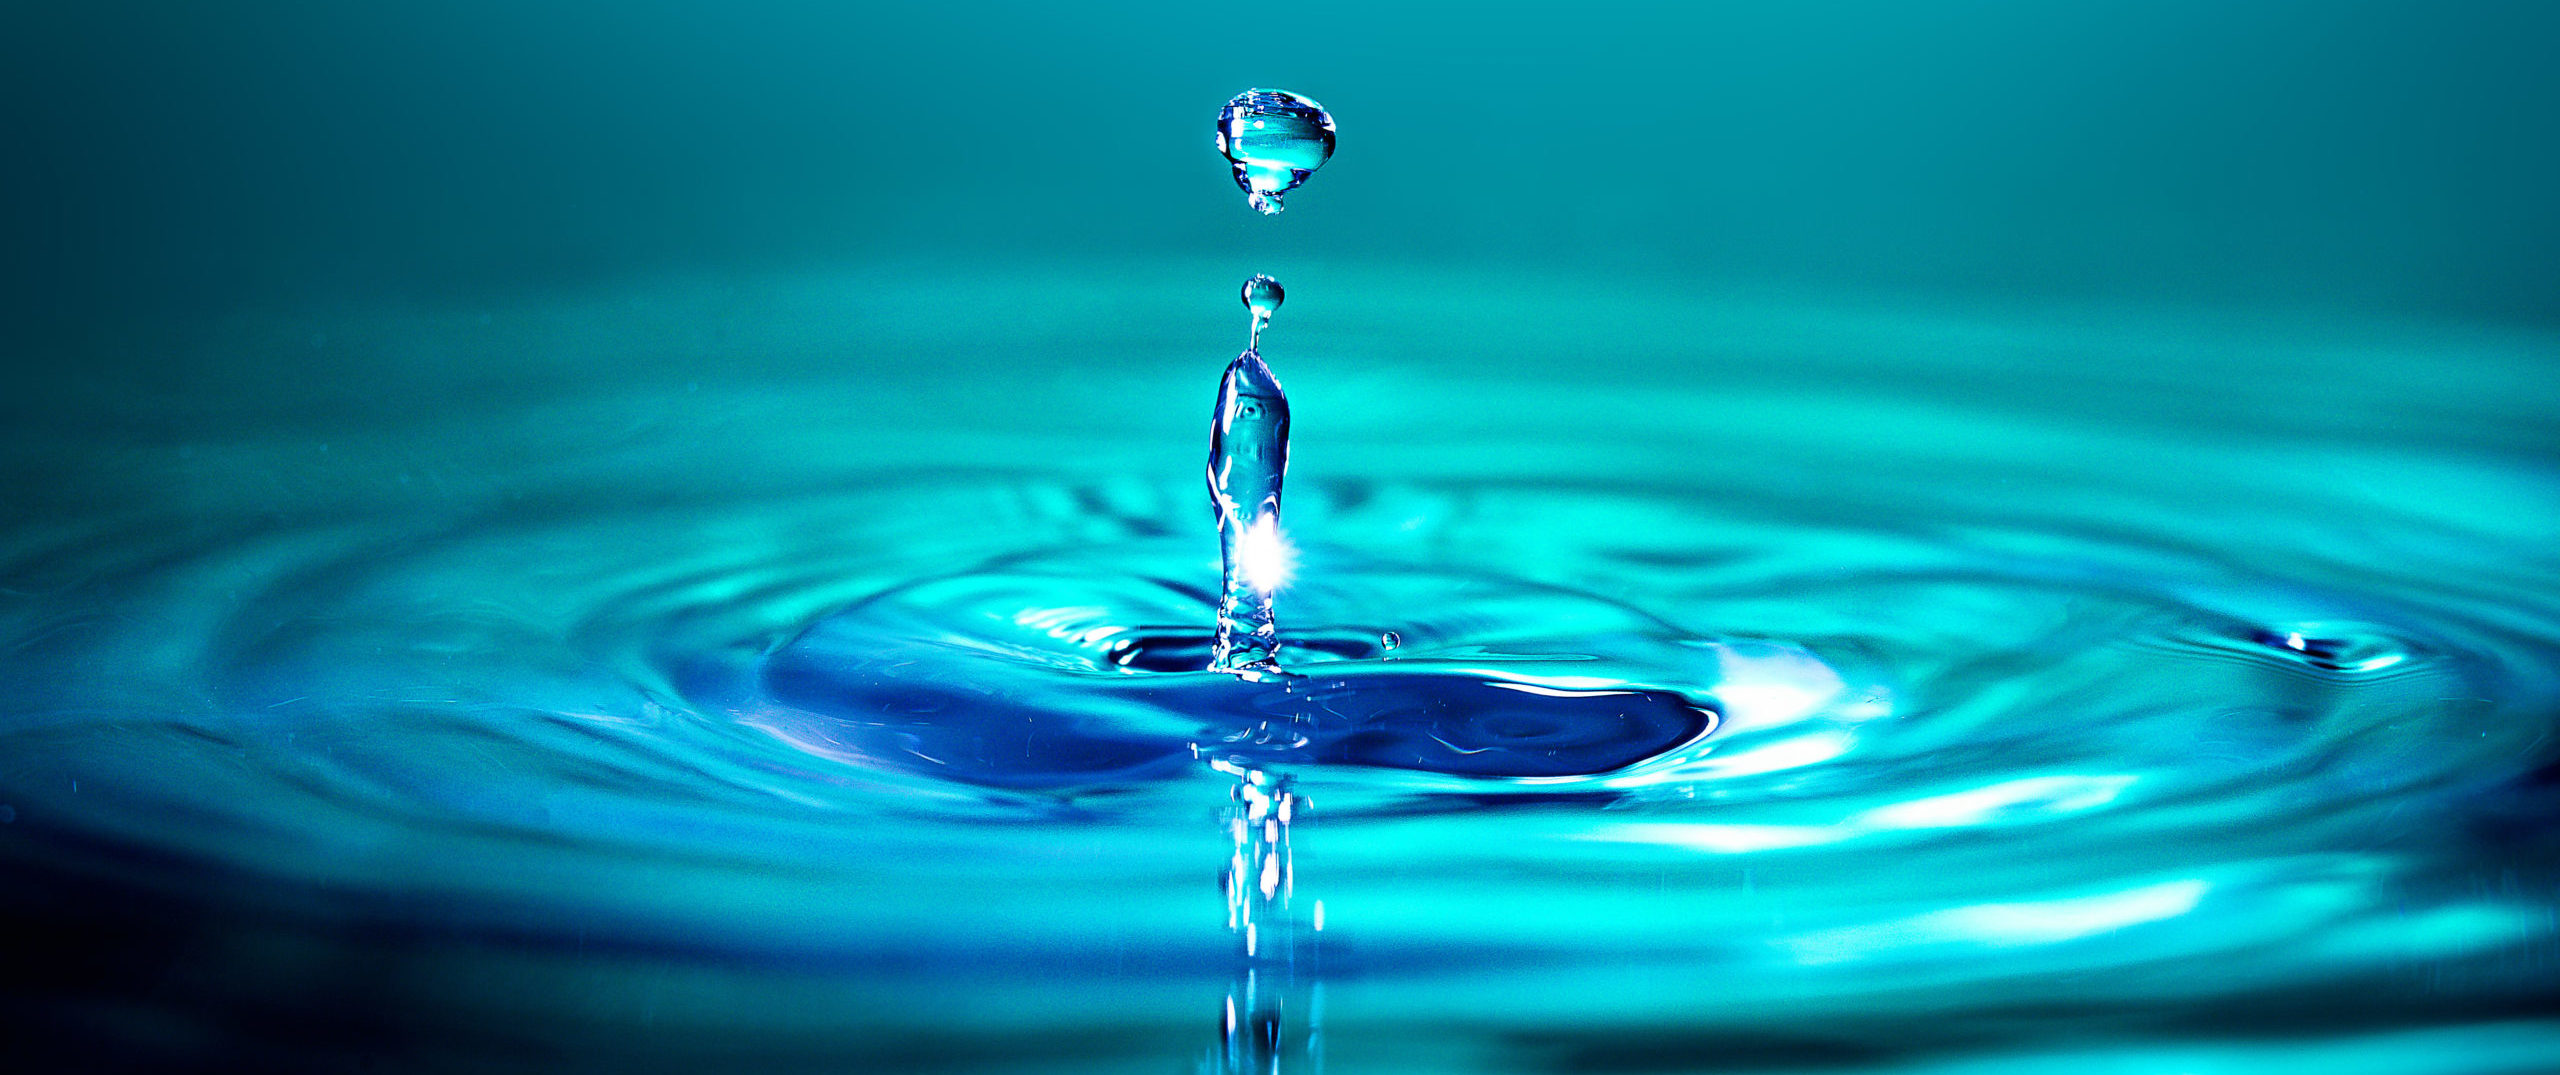 Ce 22 mars, c'est la Journée mondiale de l'eau (vidéo)